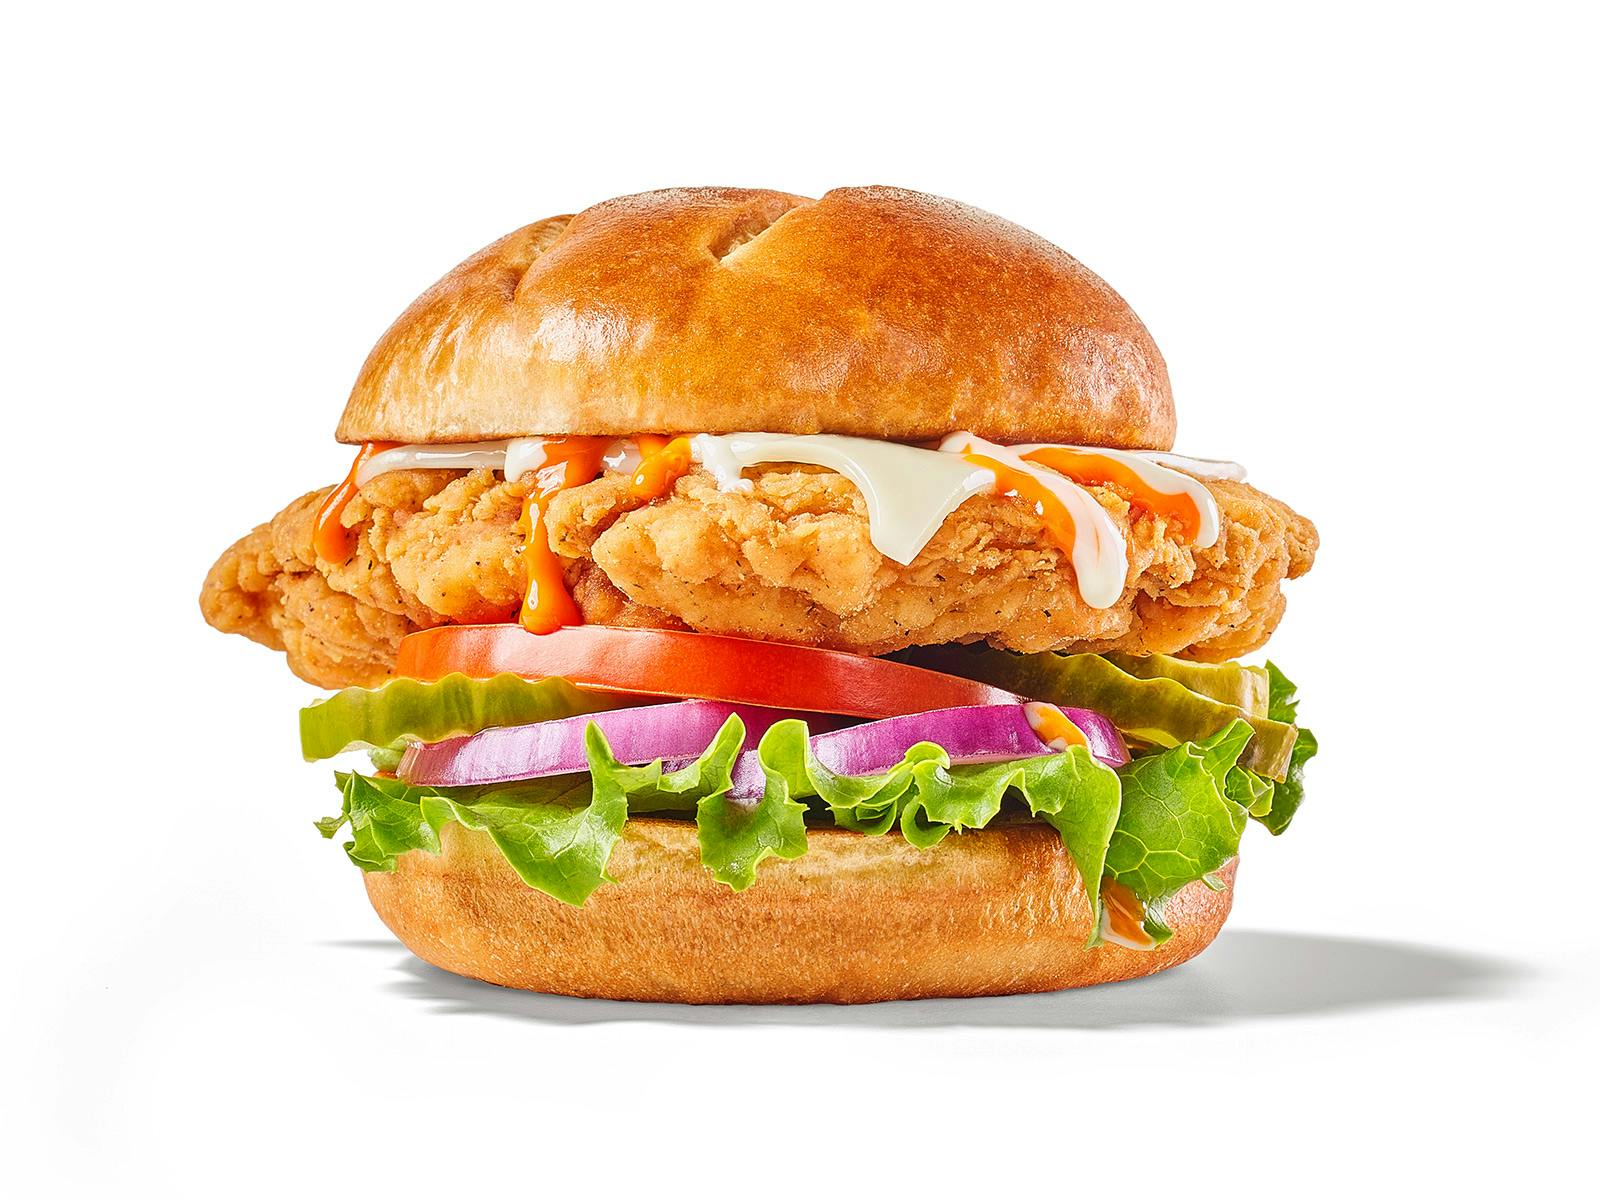 Buffalo Ranch Chicken Sandwich from Buffalo Wild Wings (65) - E Calumet Street in Appleton, WI